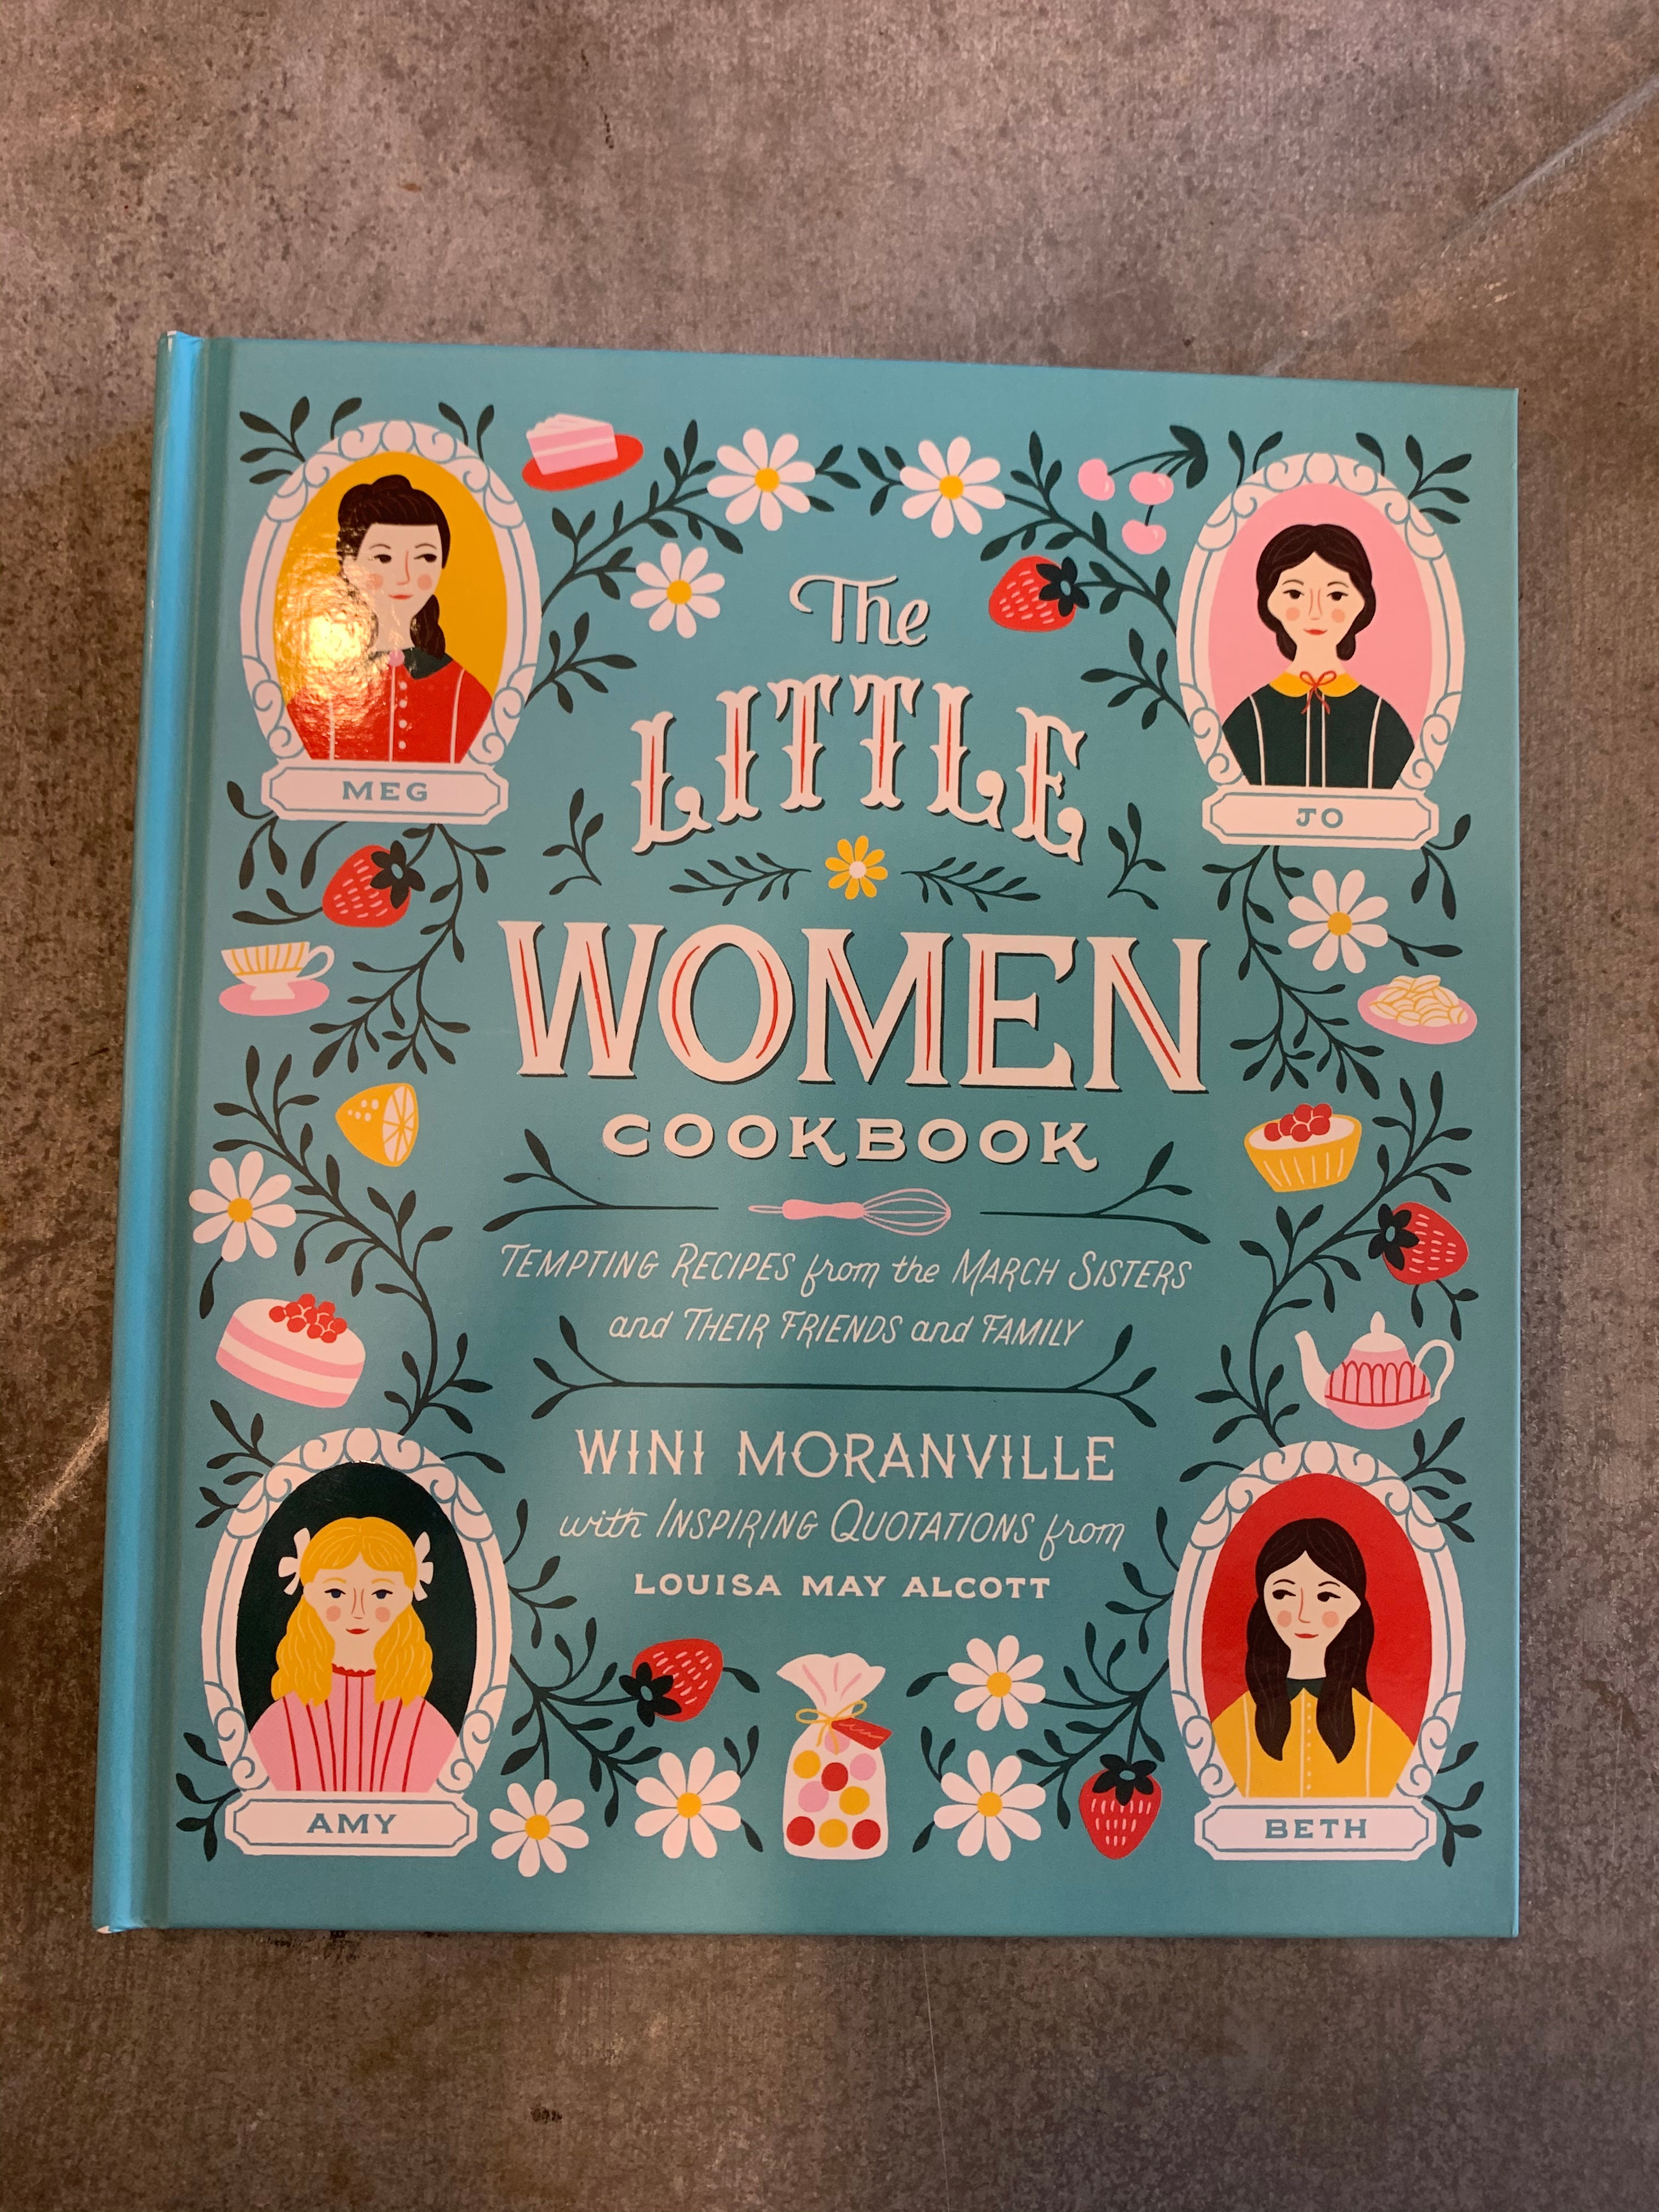 Little Women Cookbook